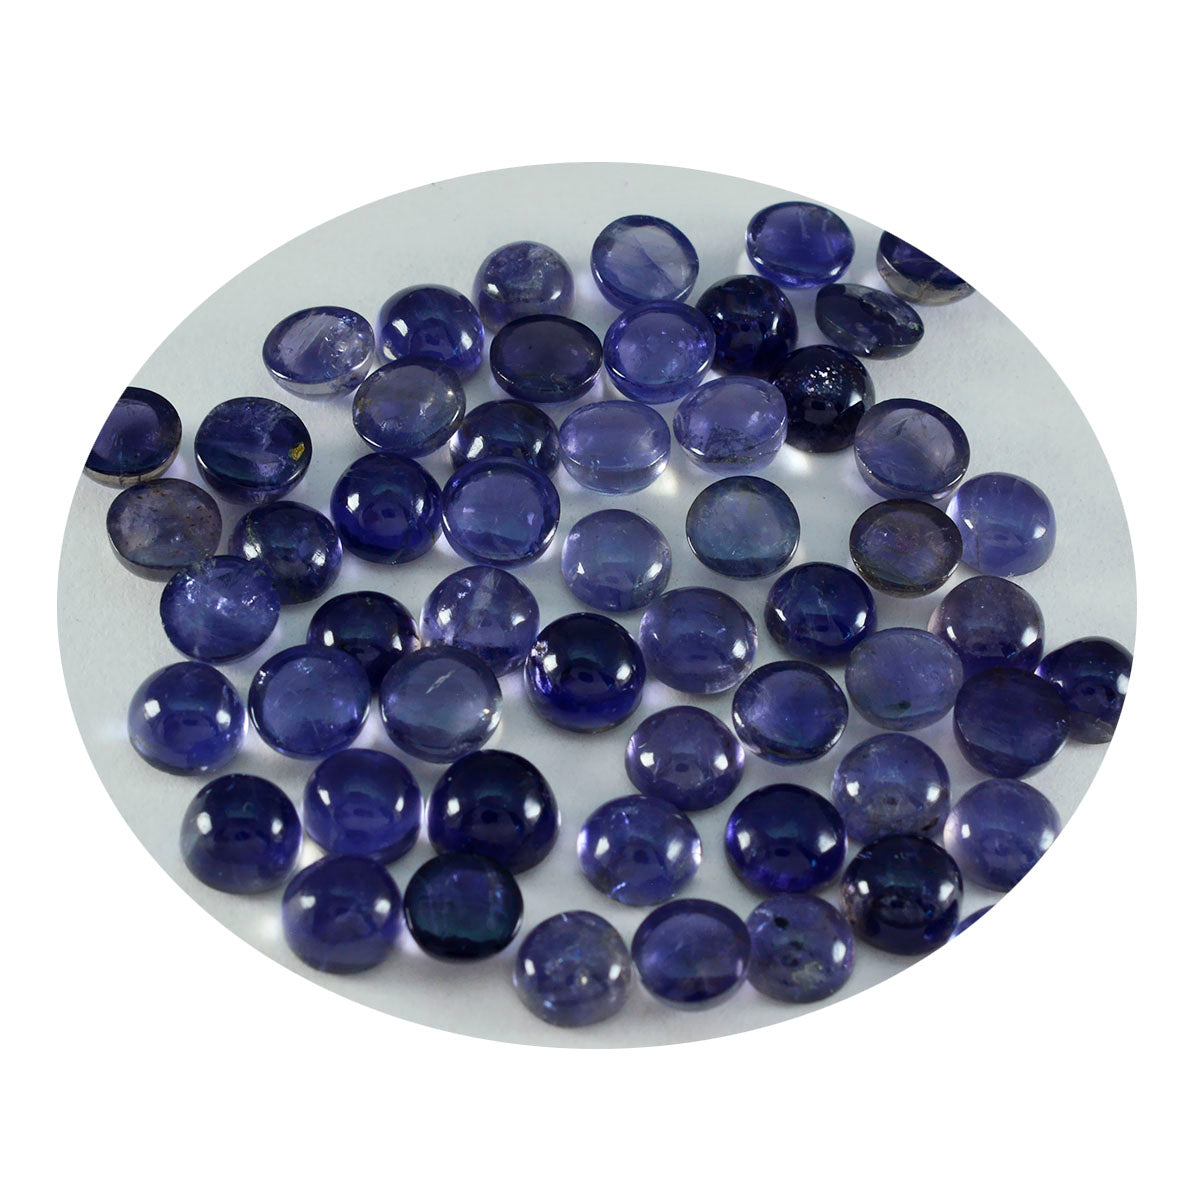 Riyogems 1PC blauwe ioliet cabochon 5x5 mm ronde vorm AA-kwaliteit steen